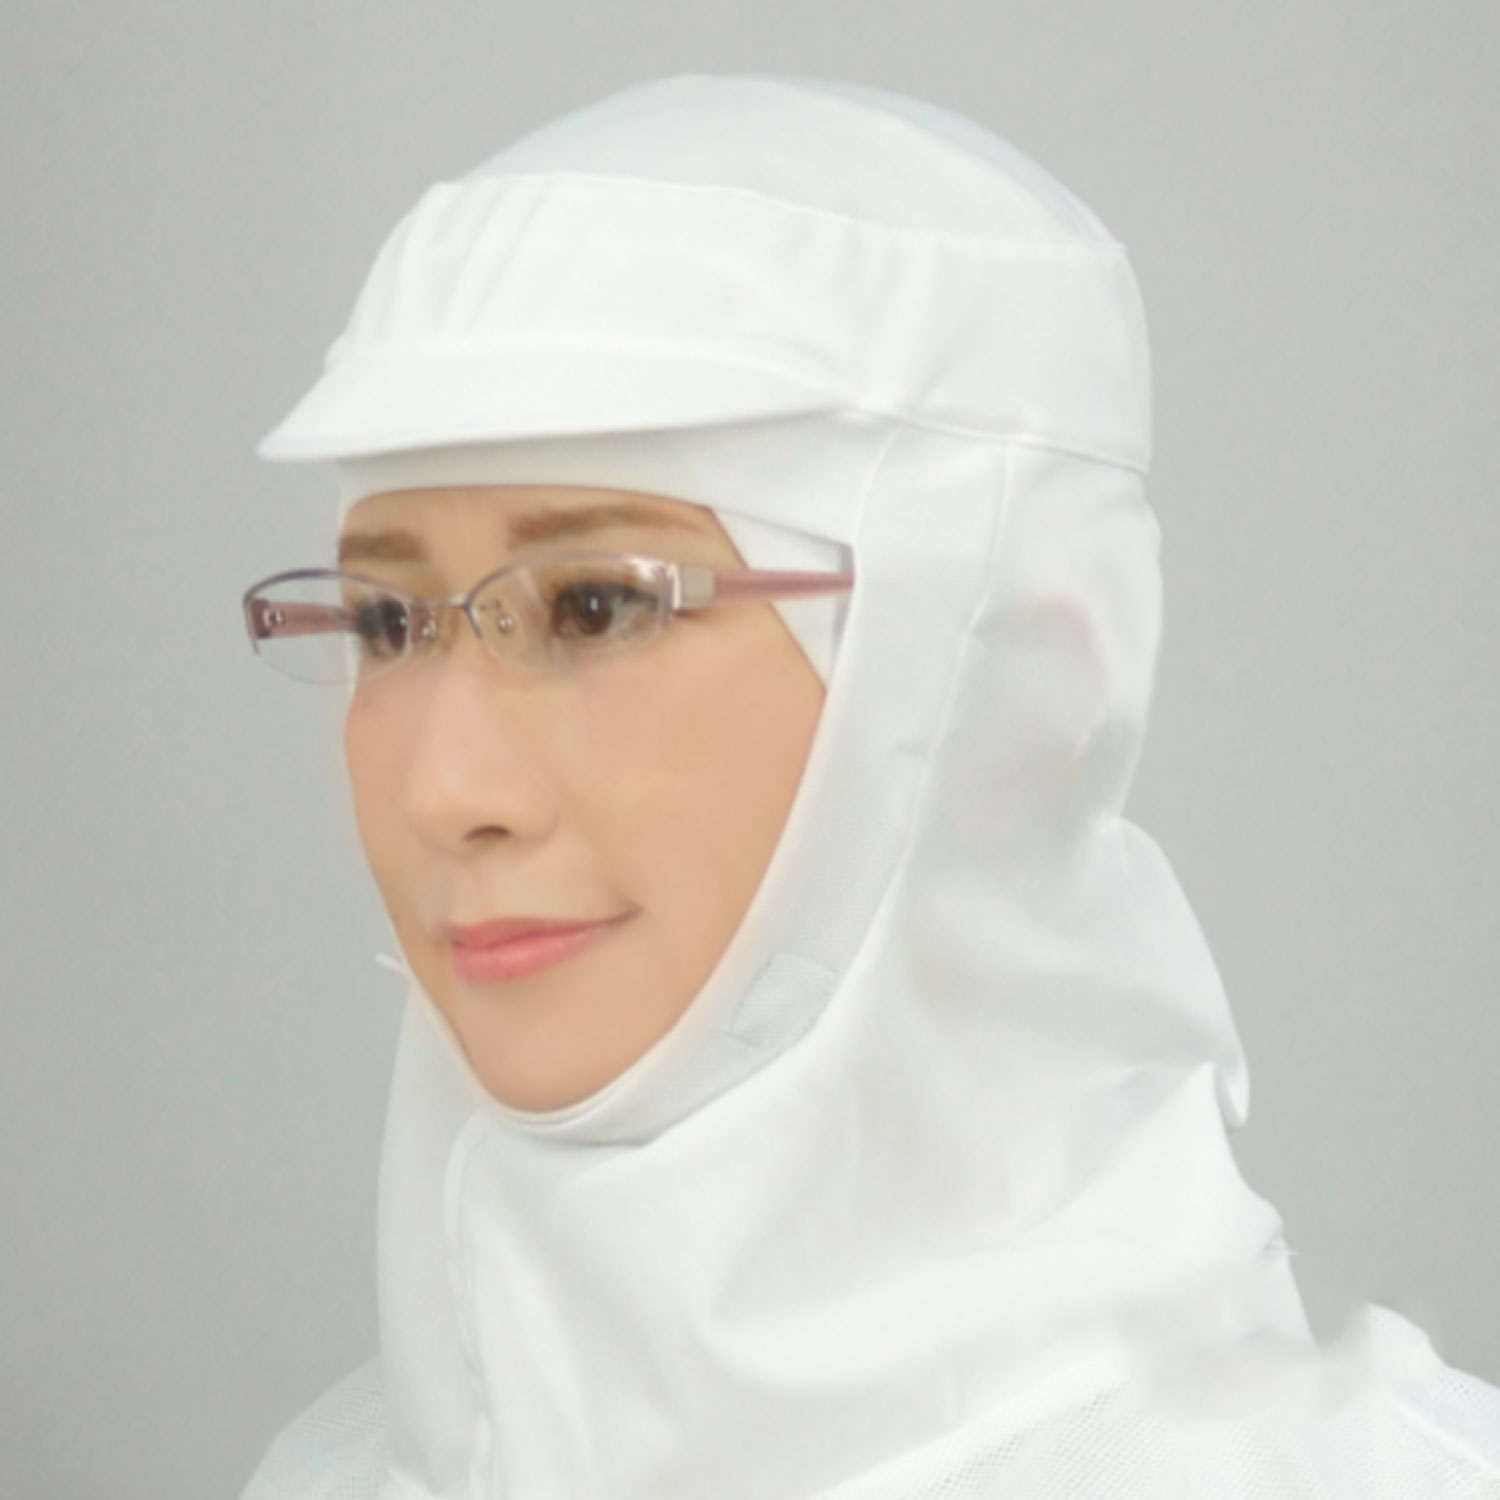 吸汗速乾性に優れた経済的なオールニット衛生頭巾。ボタン止め前合わせタイプ。着用後はかぶりタイプのような装着感。ツバ付き、眼鏡スリット付き。商品コード00669084メーカー名日本フィットフードサイズM材質ポリエステル、ソフィスタ関連商品(バラ)フィットフードFH-450W M 5枚関連商品(ケース)フィットフードFH-450W M 50枚・注意事項：モニターの発色によって色が異なって見える場合がございます。・領収書については、楽天お客様マイページから、商品出荷後にお客様自身で印刷して頂きますようお願い申し上げます。・本店では一つの注文に対して、複数の送り先を指定することができません。お手数おかけしますが、注文を分けていただきます様お願い致します。・支払い方法で前払いを指定されて、支払いまで日数が空く場合、商品が廃番もしくは欠品になる恐れがございます。ご了承ください。・注文が重なった場合、発送予定日が遅れる可能性がございます。ご了承ください。・お急ぎの場合はなるべく支払い方法で前払い以外を選択いただきます様お願い致します。支払い時期によっては希望納期に間に合わない場合がございます。